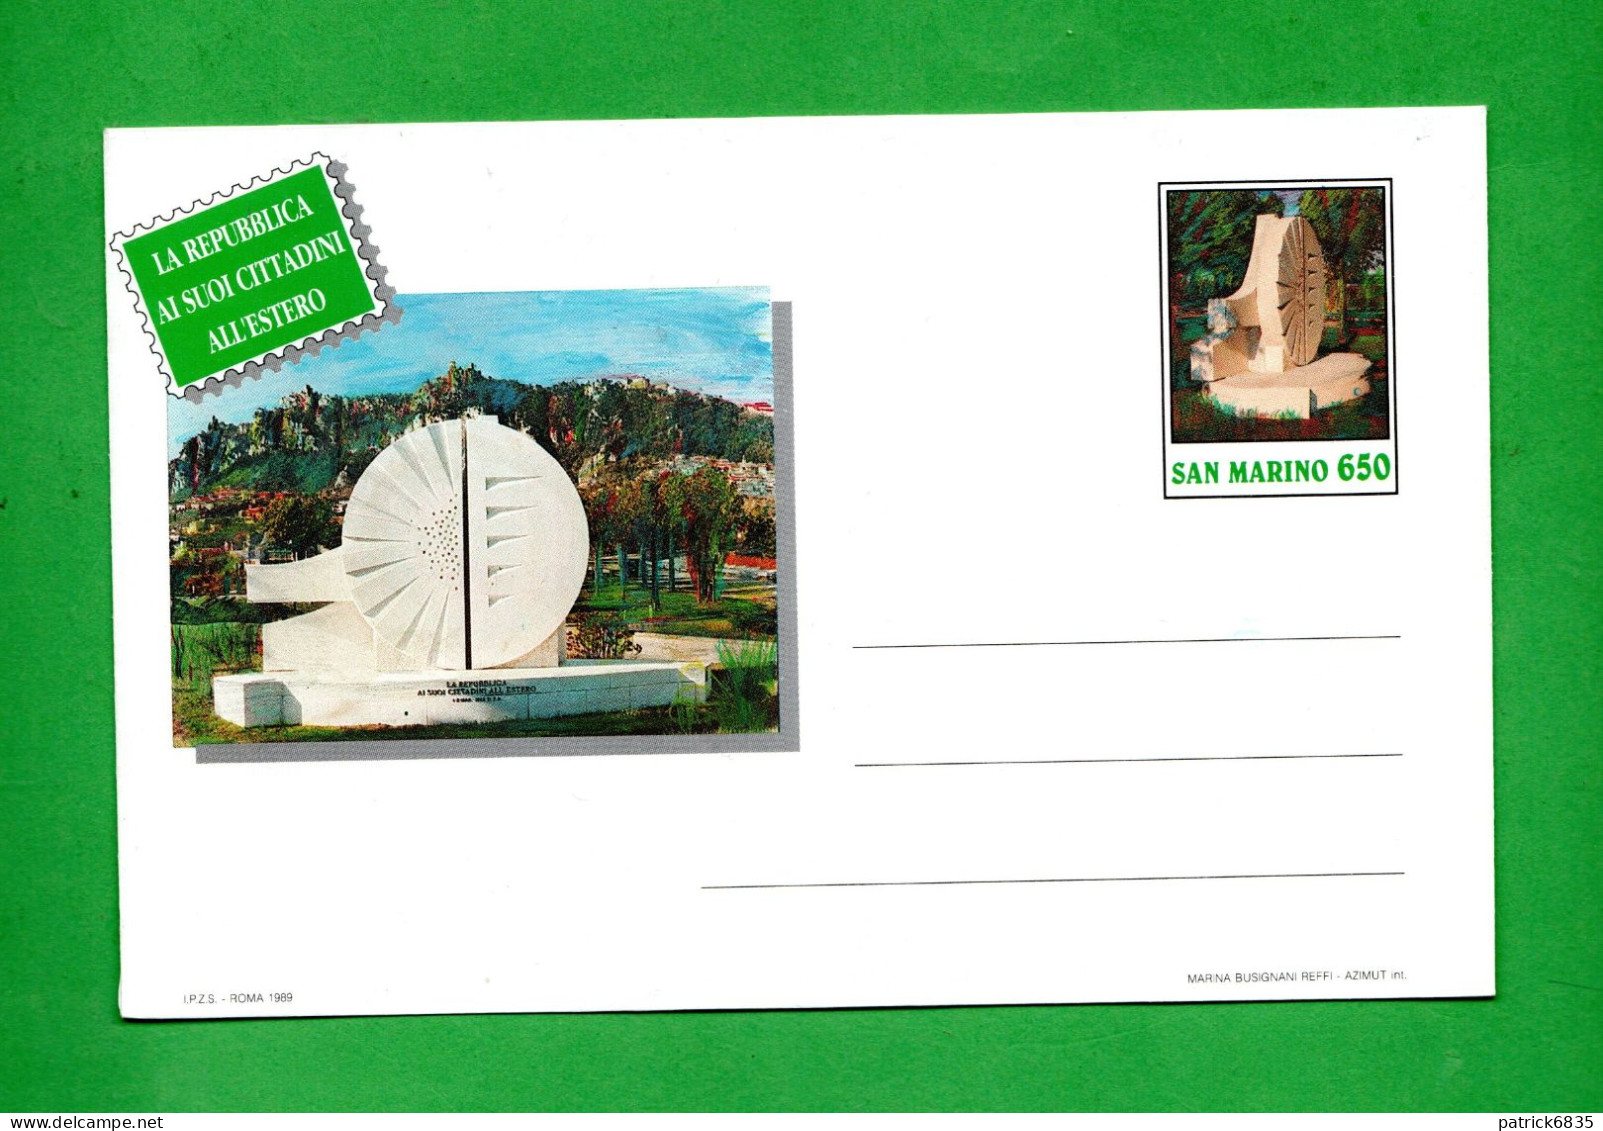 San. MARino - 1989 - Busta Postale, La Repubblica Ai Suoi Cittadini All'Estero,  £ 650. - Ganzsachen